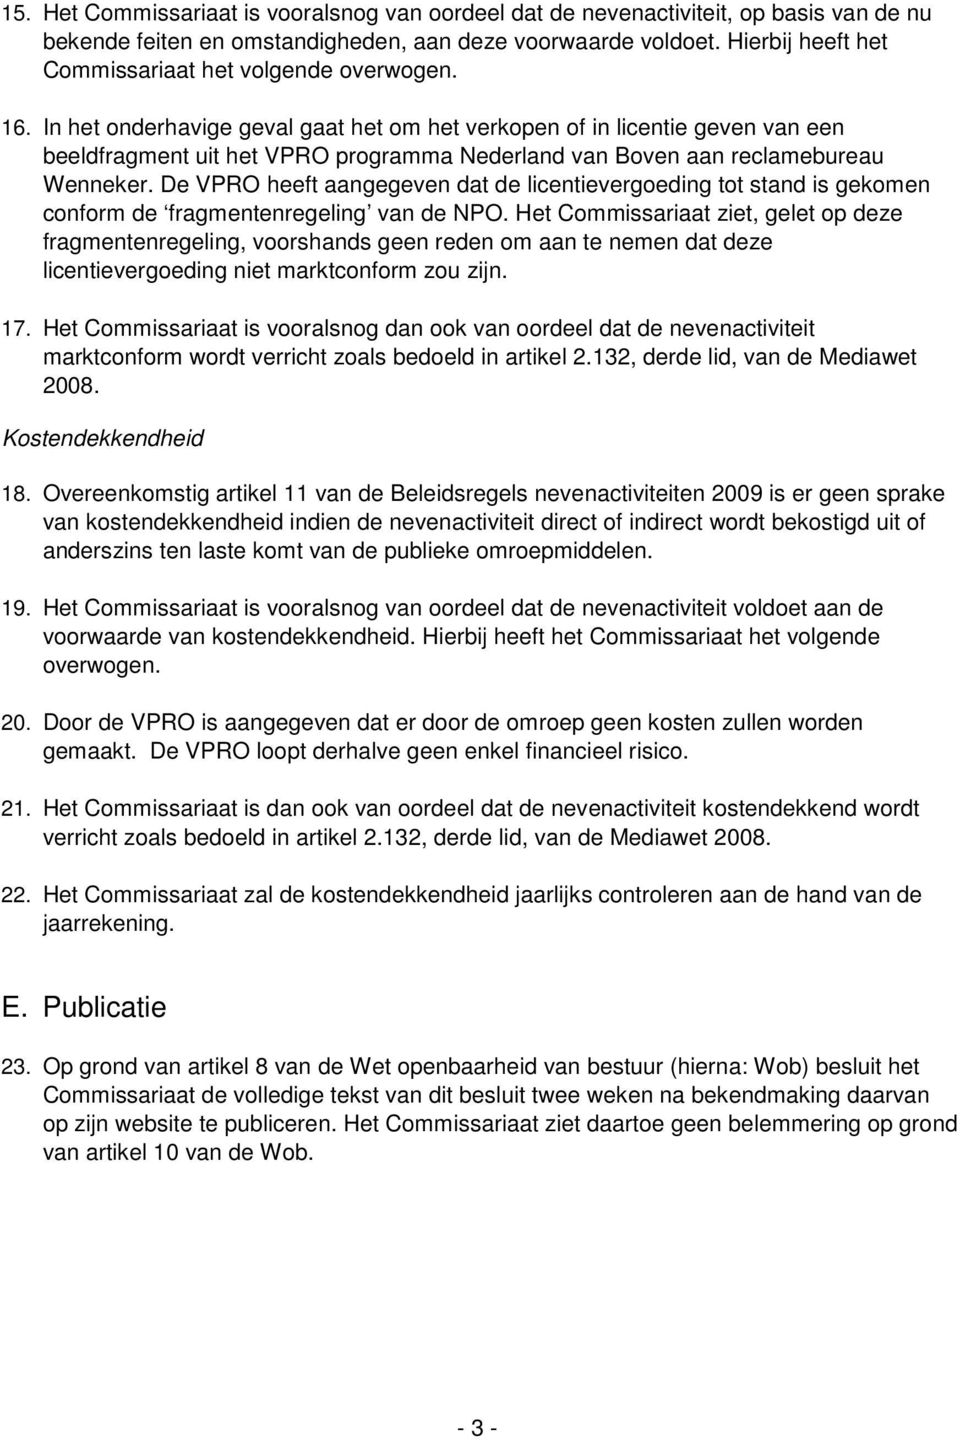 In het onderhavige geval gaat het om het verkopen of in licentie geven van een beeldfragment uit het VPRO programma Nederland van Boven aan reclamebureau Wenneker.